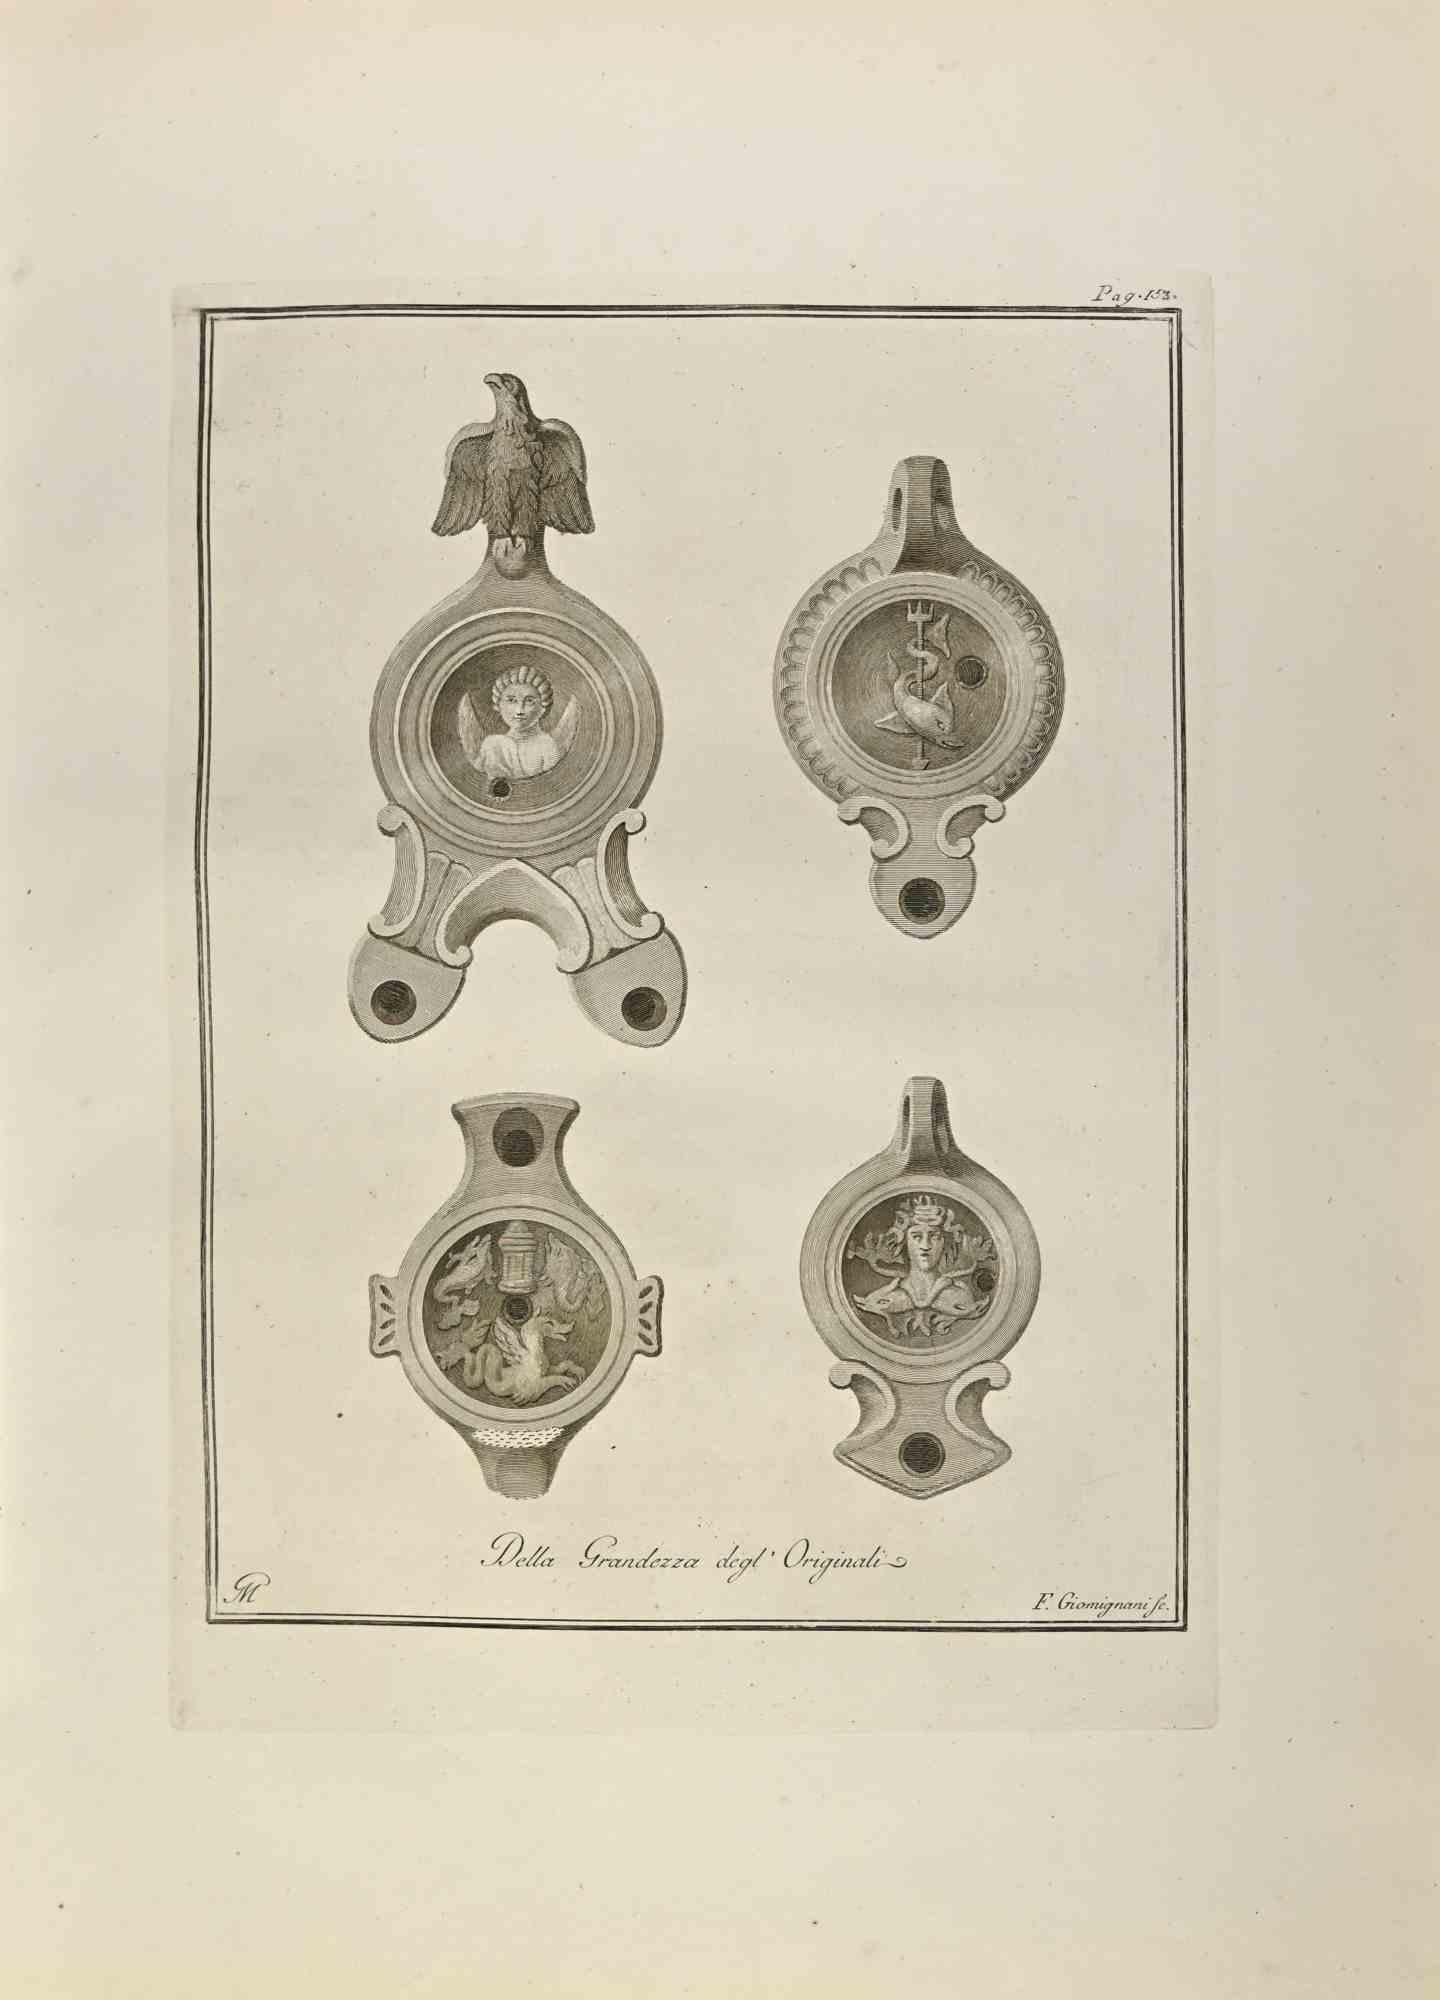 Öllampe  Mit Medusa, Amor und Poseidon aus den "Altertümern von Herculaneum" ist eine Radierung auf Papier von Francesco Giomignani aus dem 18. Jahrhundert.

Signiert auf der Platte.

Gute Bedingungen.

Die Radierung gehört zu der Druckserie